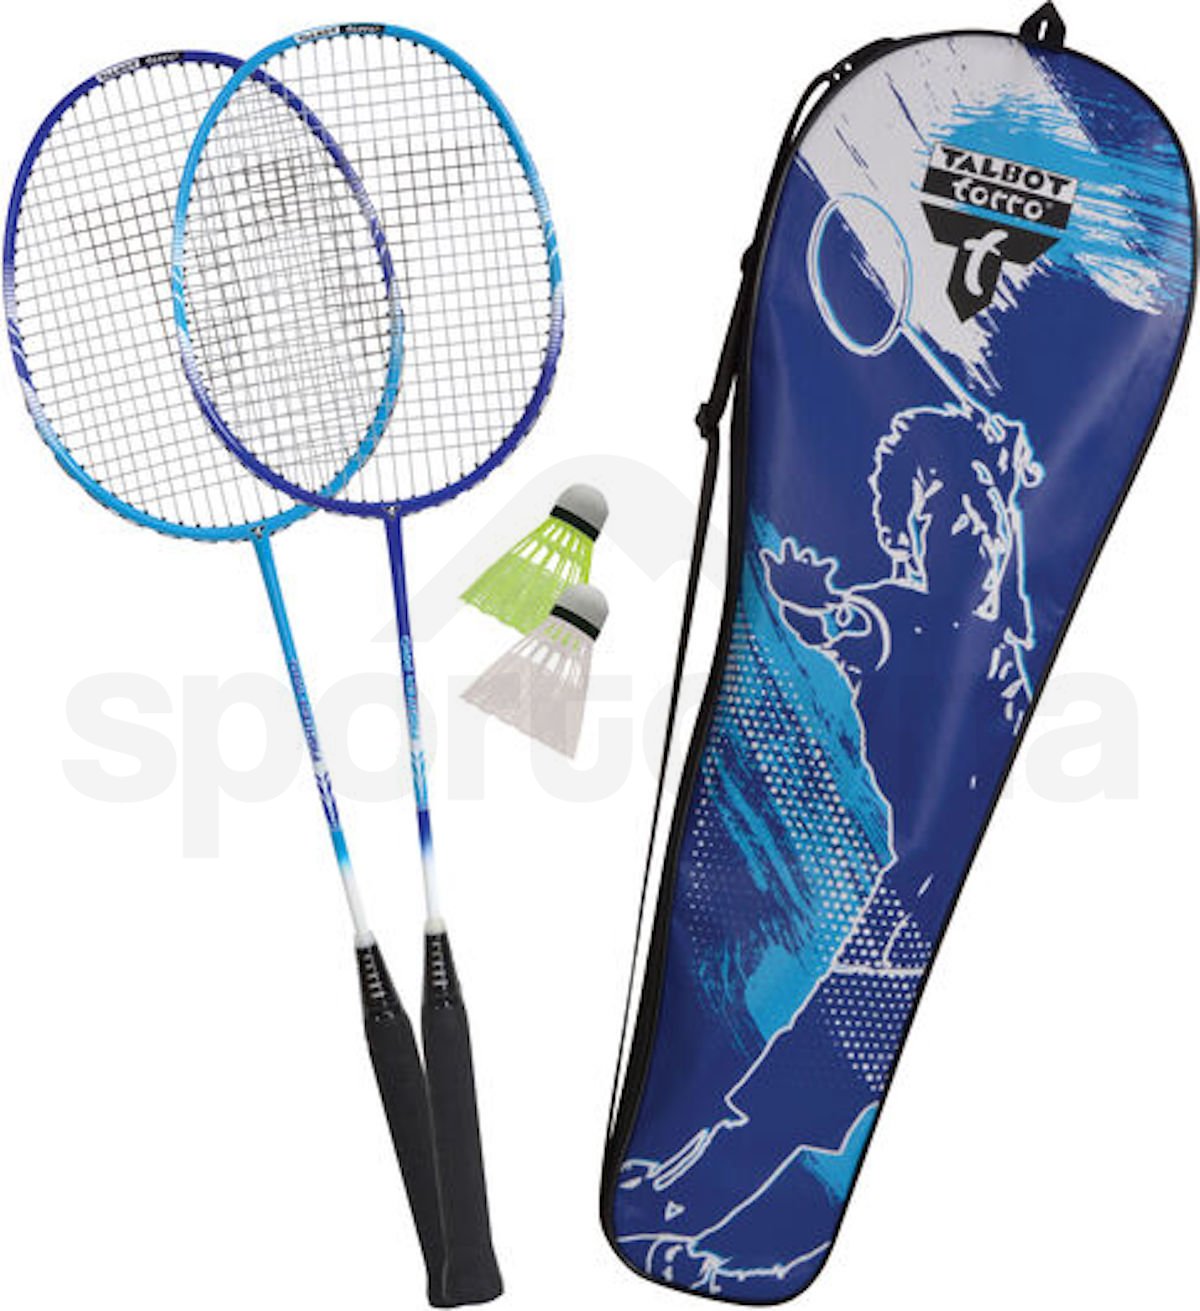 Badmintonová sada Talbot Torro 2 Fighter - modrá